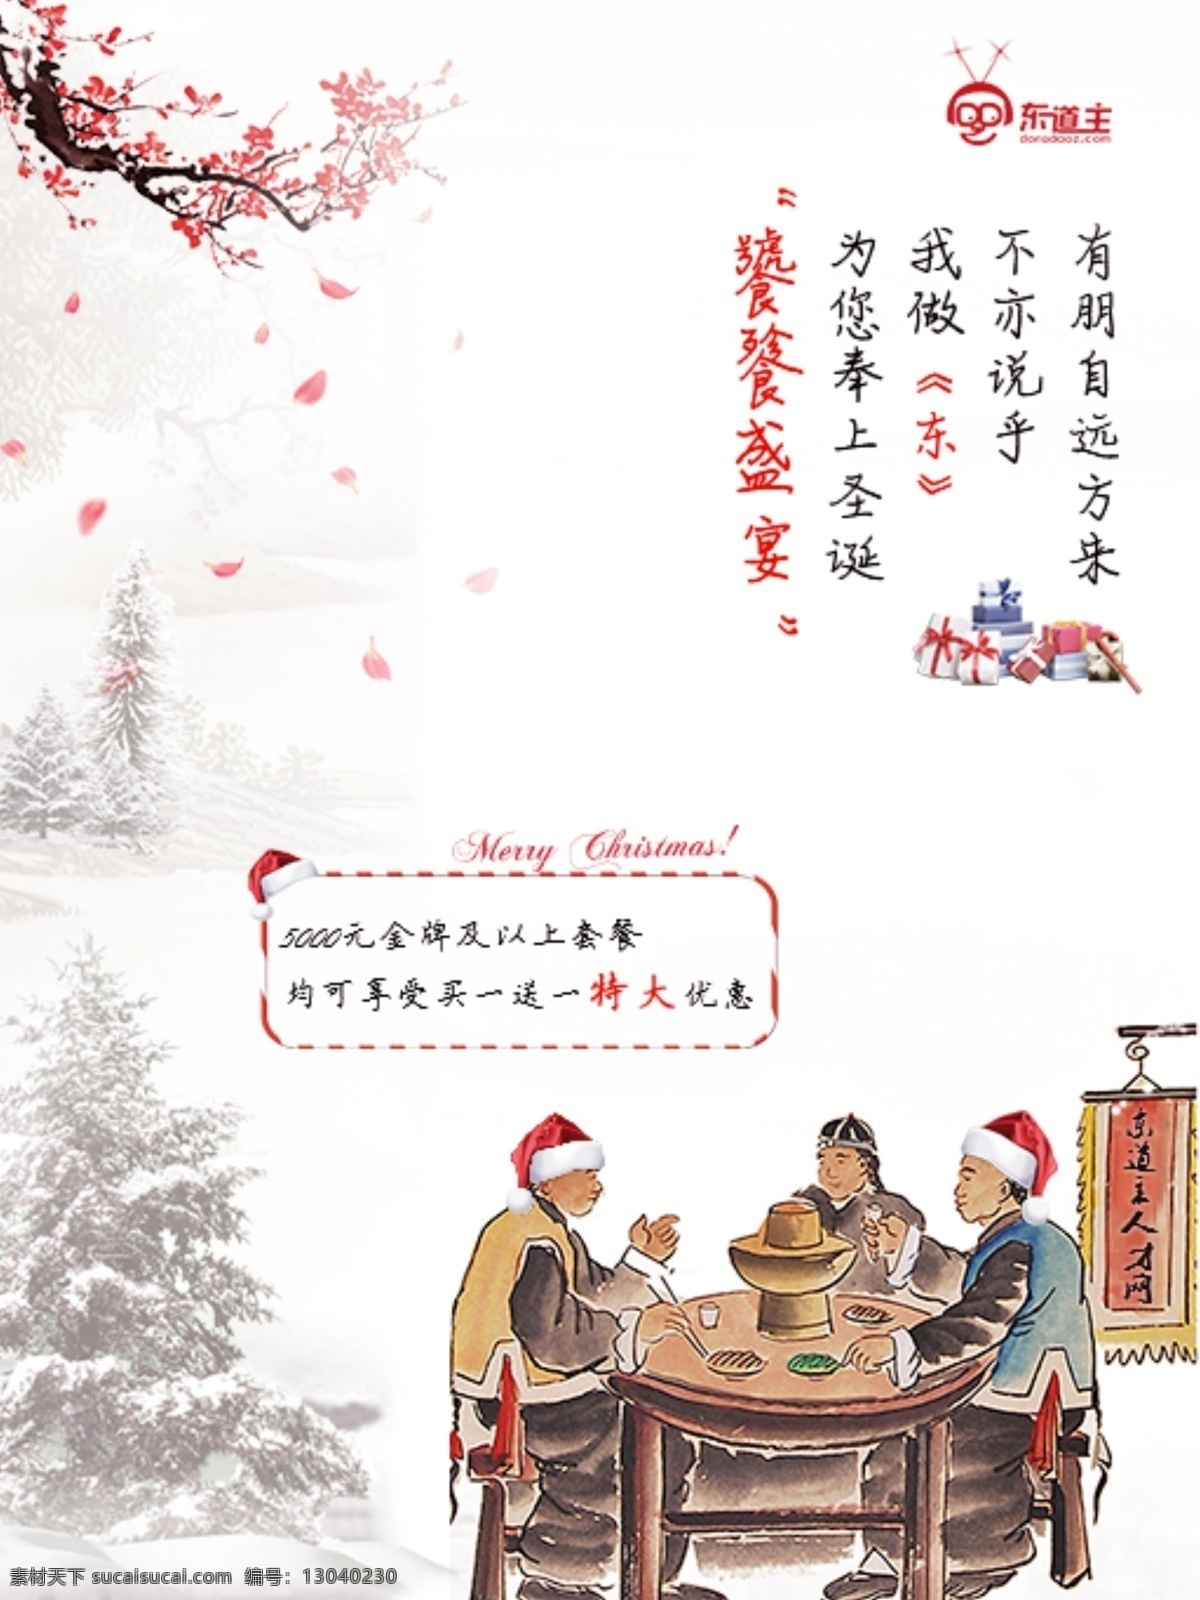 中国 风 圣诞 海报 中国风 圣诞节 创意 古代插画 复古圣诞海报 活动 优惠 圣诞树 梅花腊梅 圣诞礼物